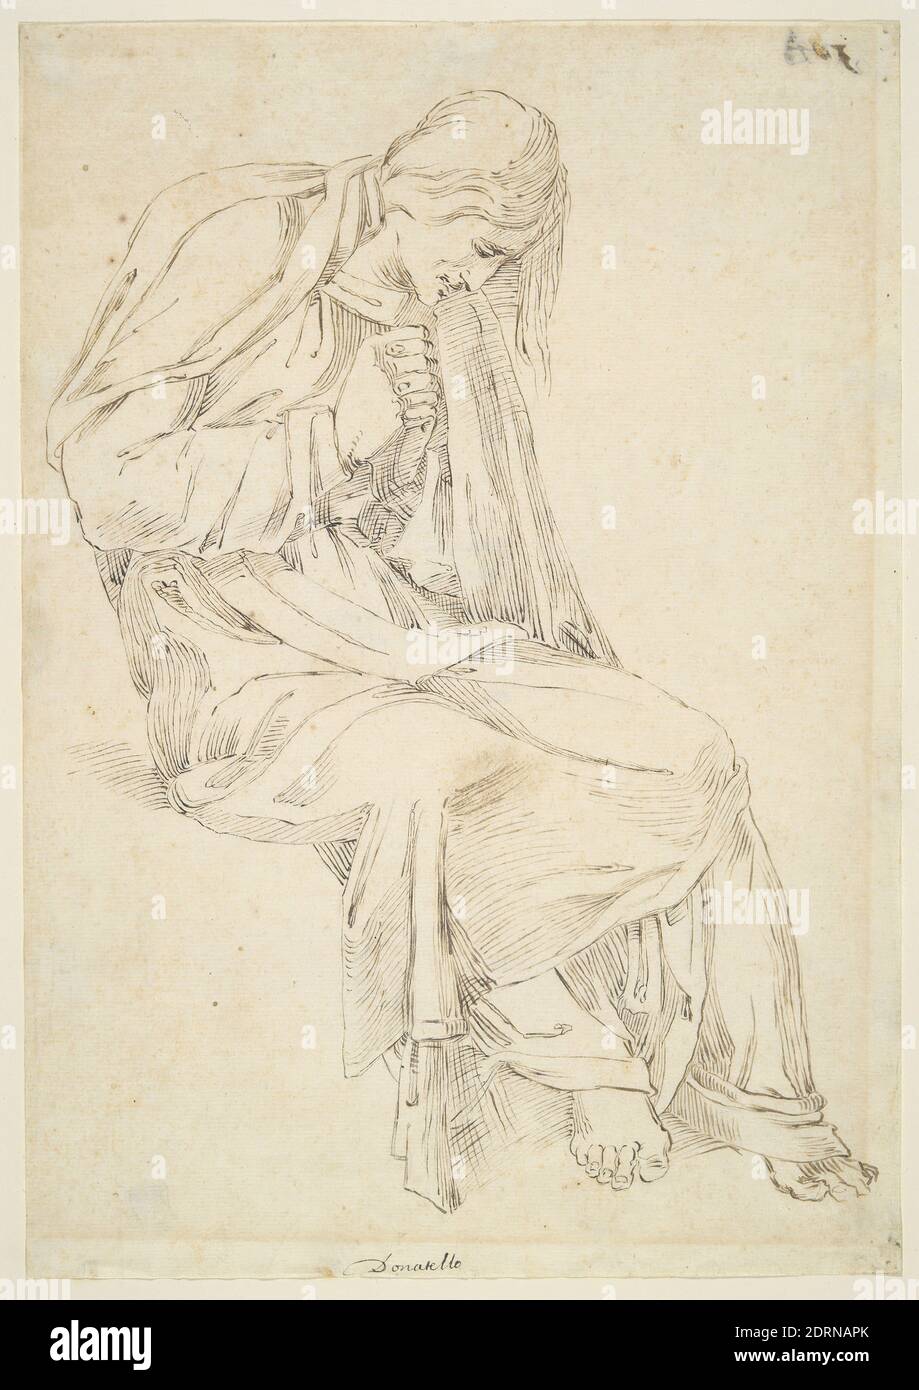 Donato di Niccolo, detto Donatello, Works of Art, RA Collection